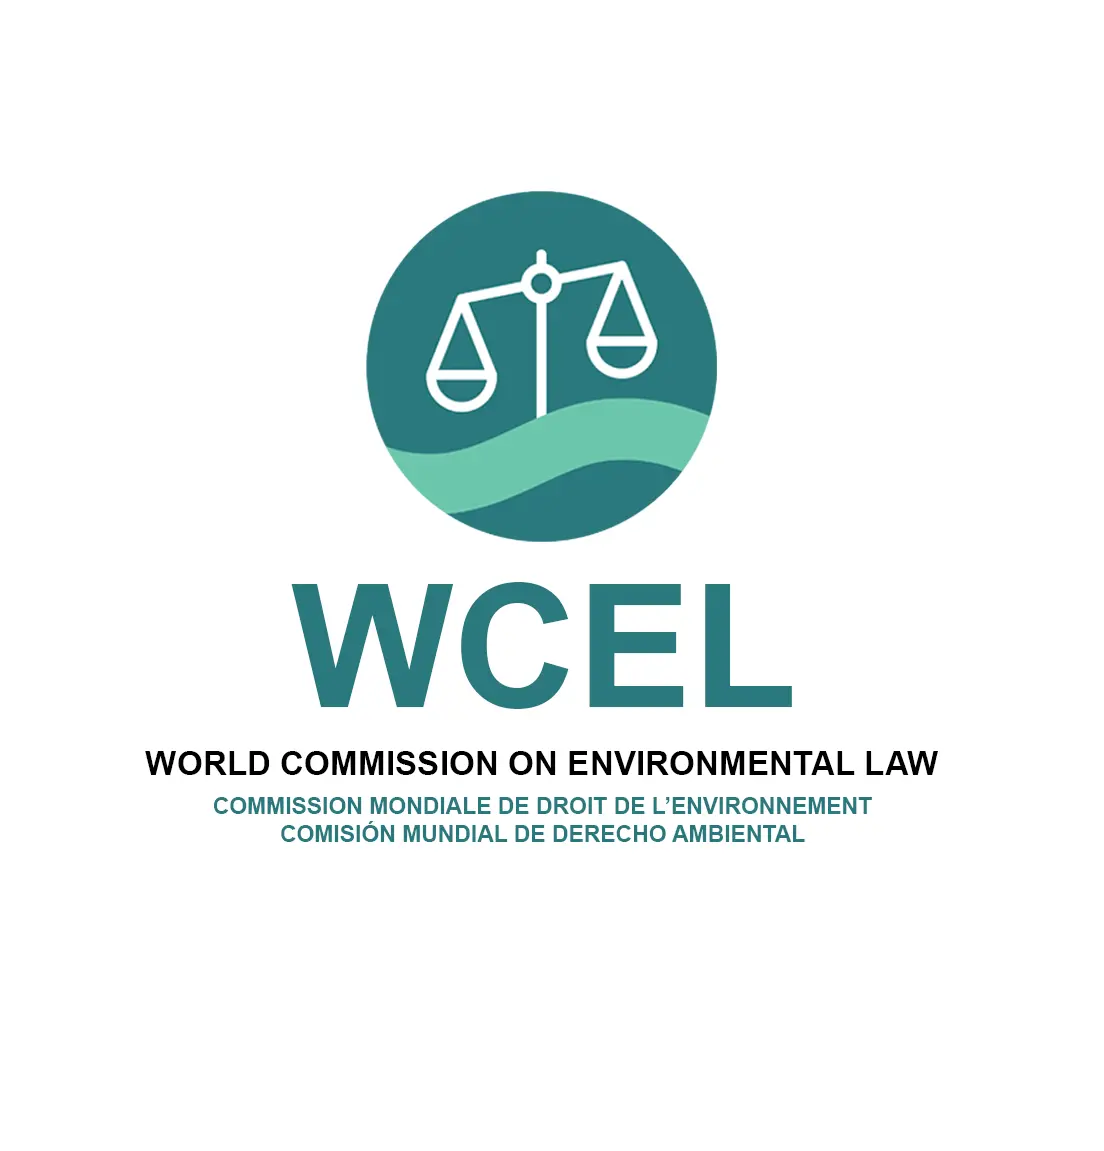 IUCN WCEL logo